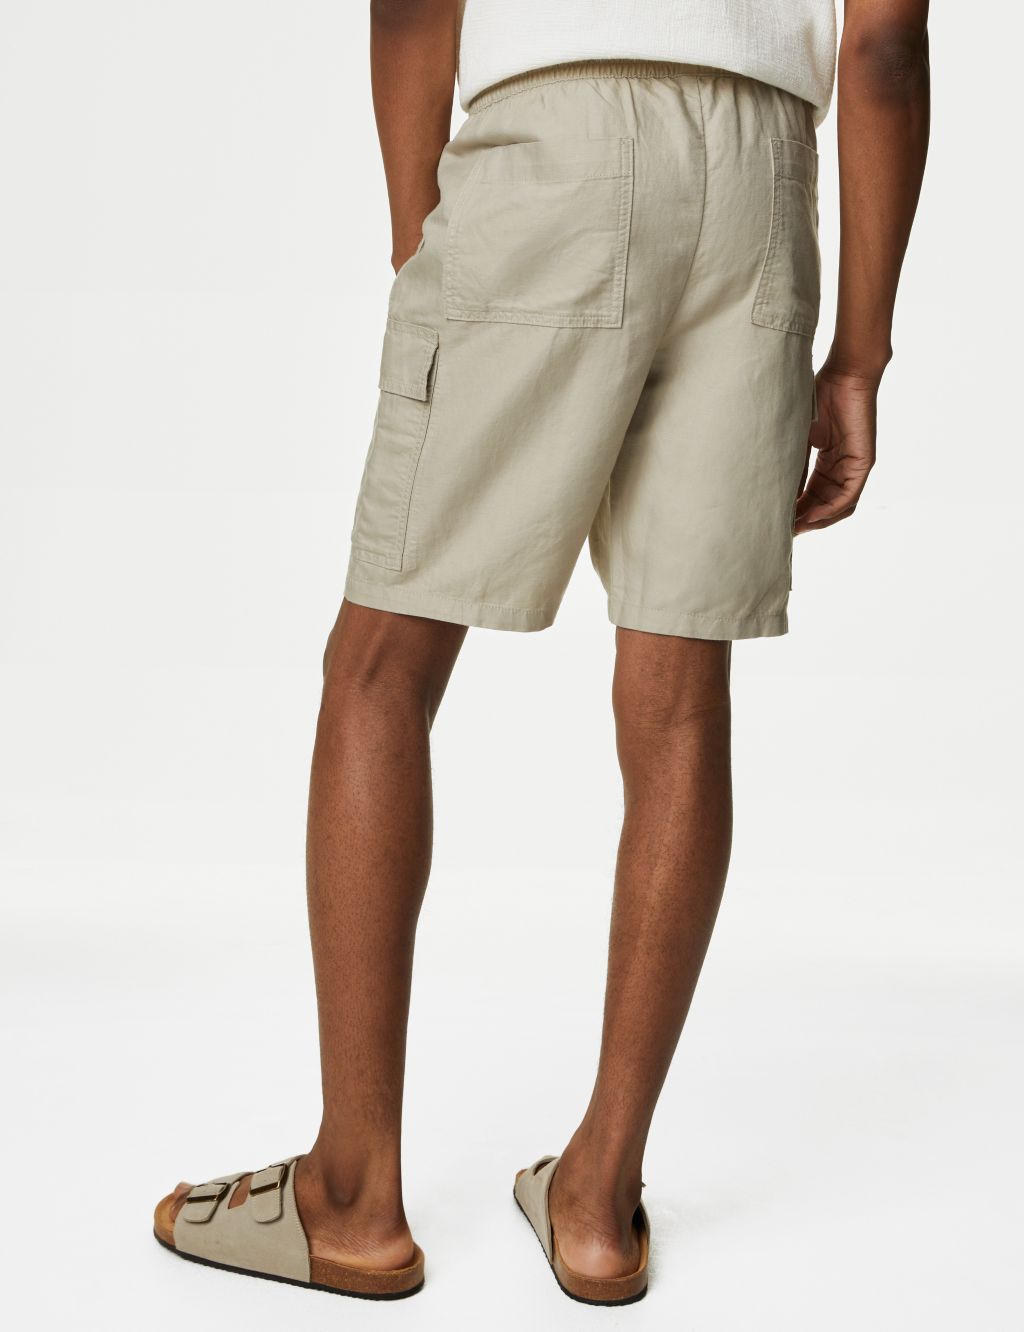 Louis Vuitton Men's Linen Shorts - Black- Size 40